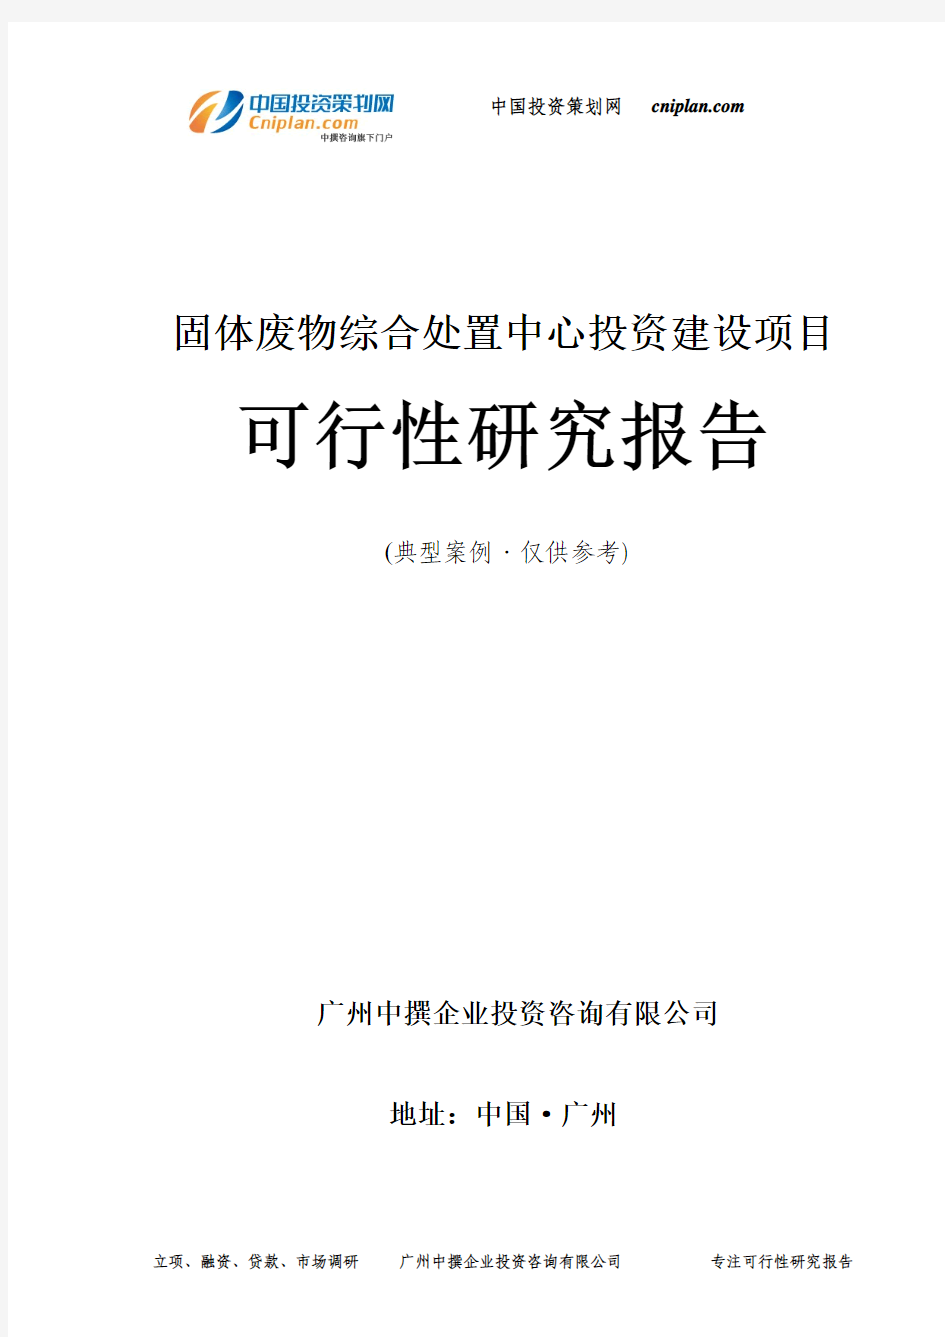 固体废物综合处置中心投资建设项目可行性研究报告-广州中撰咨询